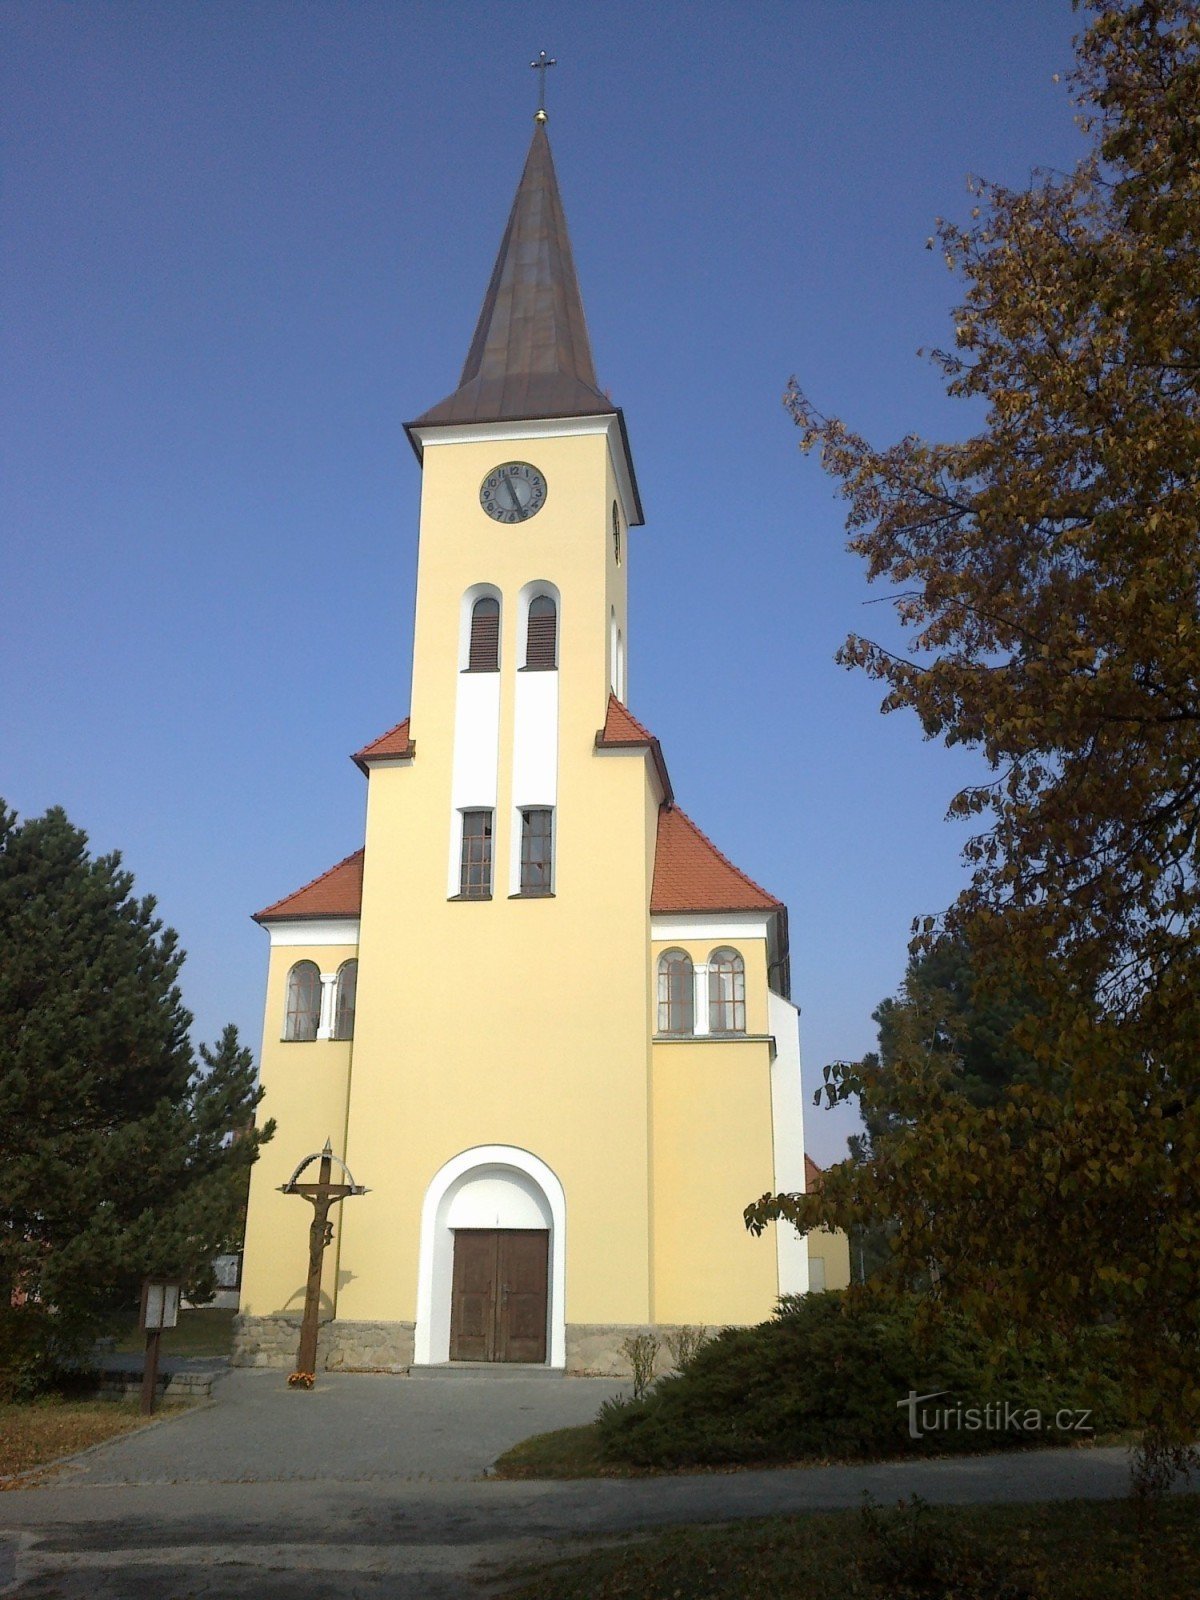 Церковь в Врбиче.